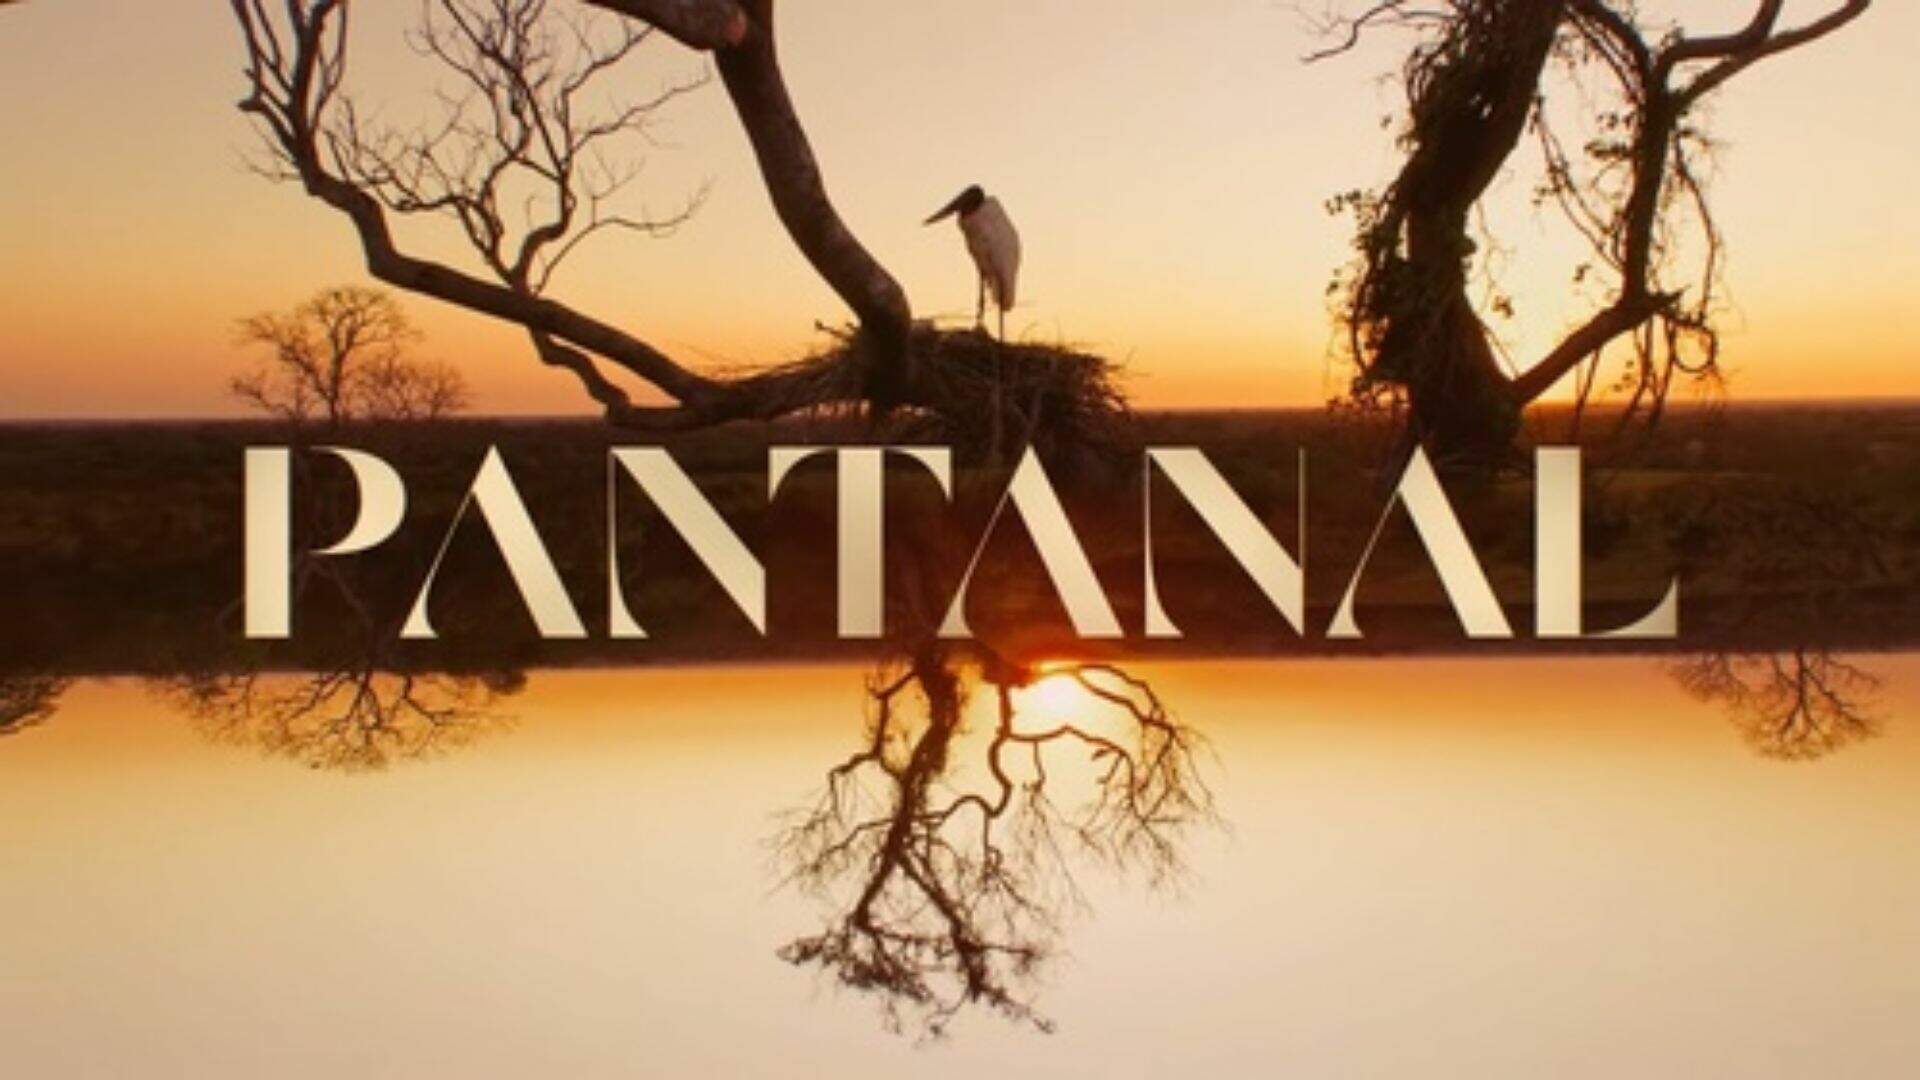 Ator de Pantanal posta pedido de socorro no Instagram e preocupa seguidores - Metropolitana FM